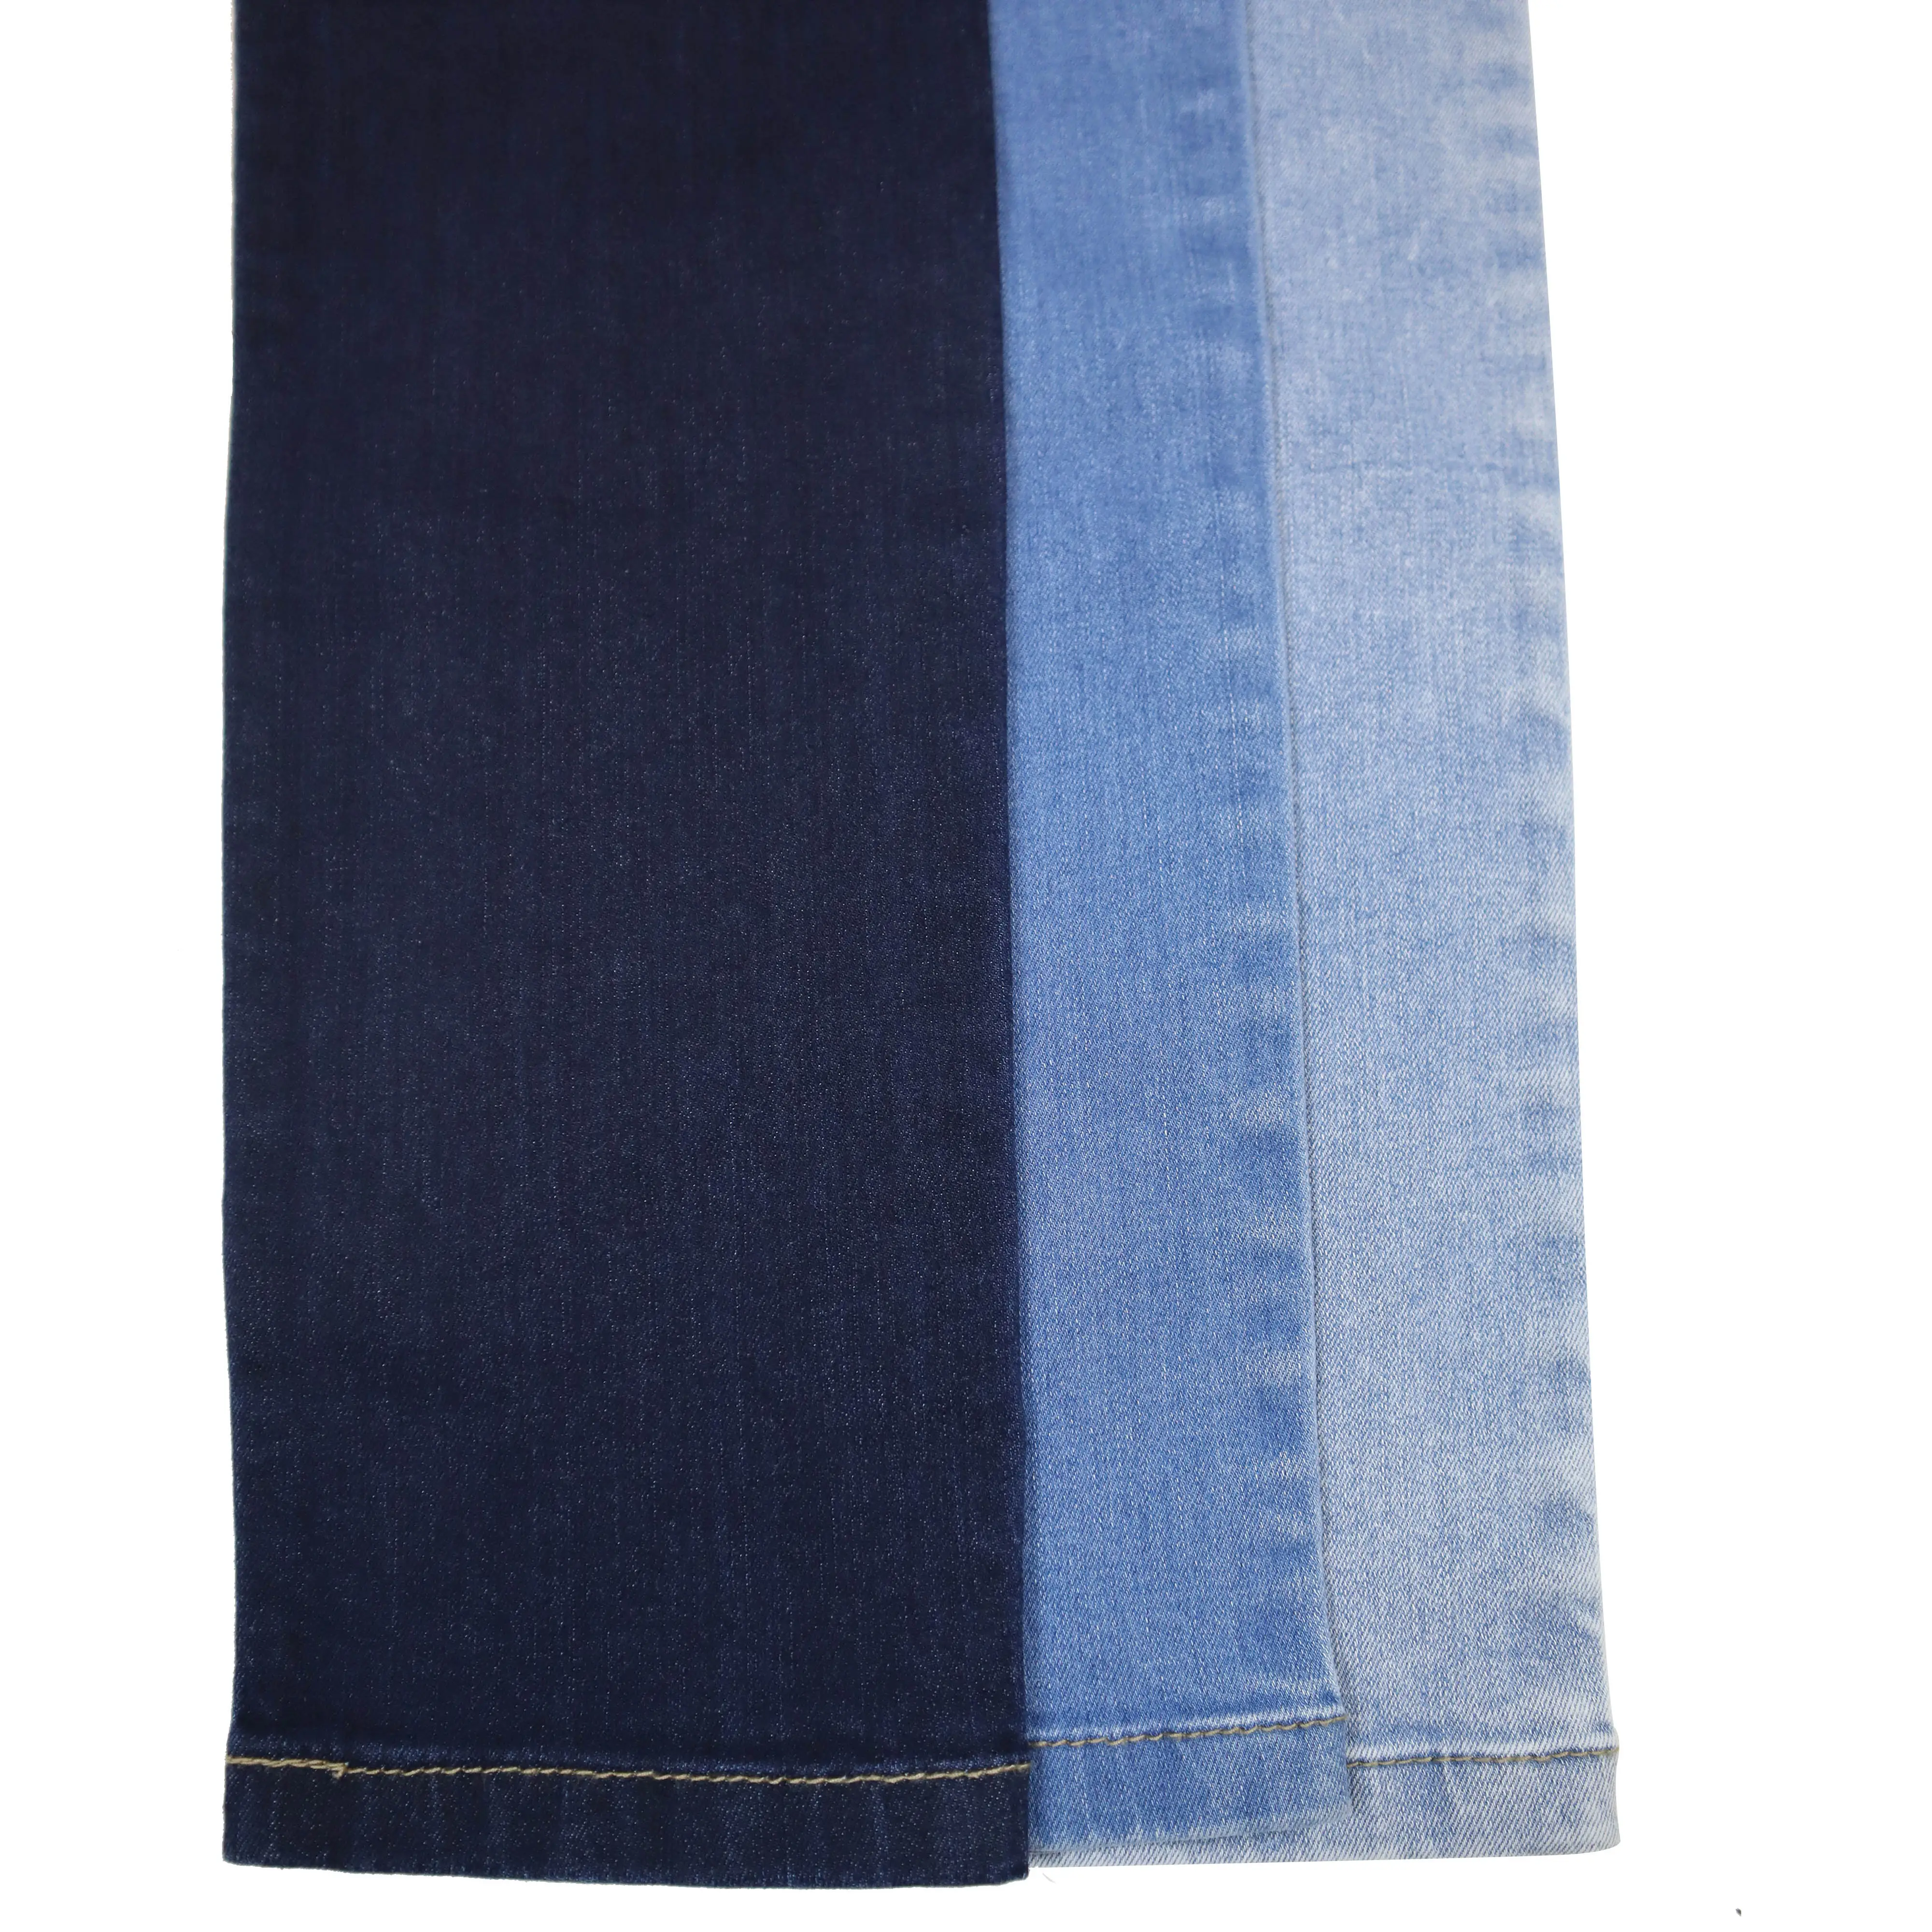 CF-RL823 Twill Stretch Denim Raw Jean Fabric 10.8oz Plain Style Denim Cotton Spandex Denim Blank Twill